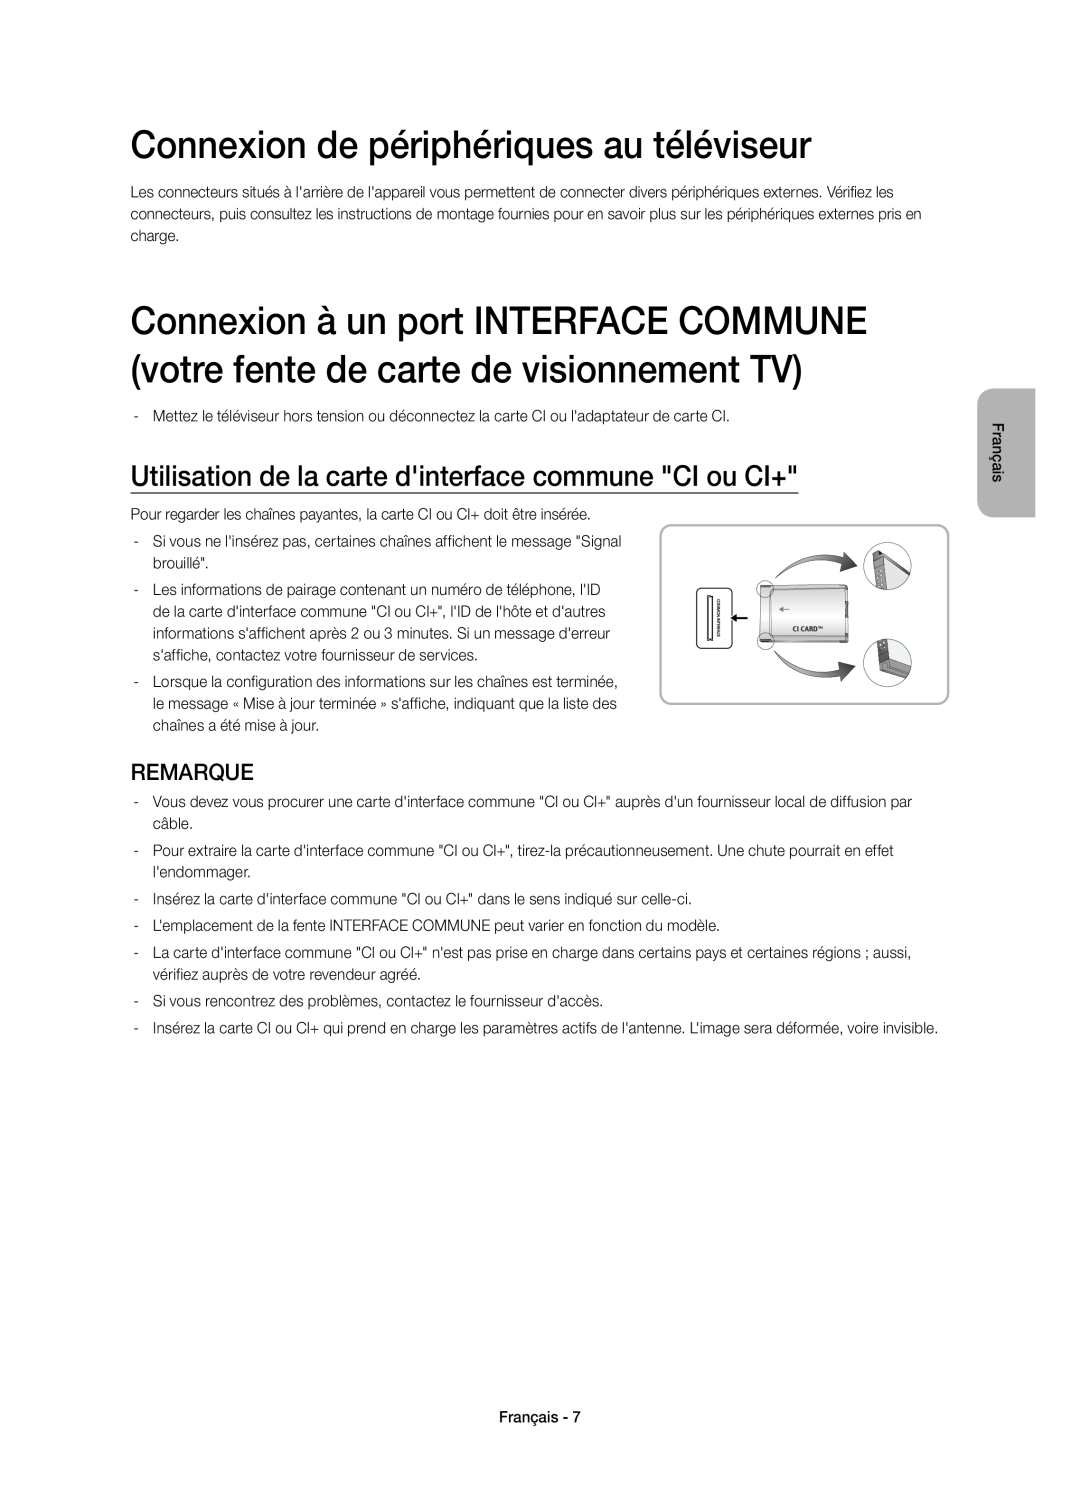 Samsung UE40H5303AWXZG Connexion de périphériques au téléviseur, Utilisation de la carte dinterface commune CI ou CI+ 